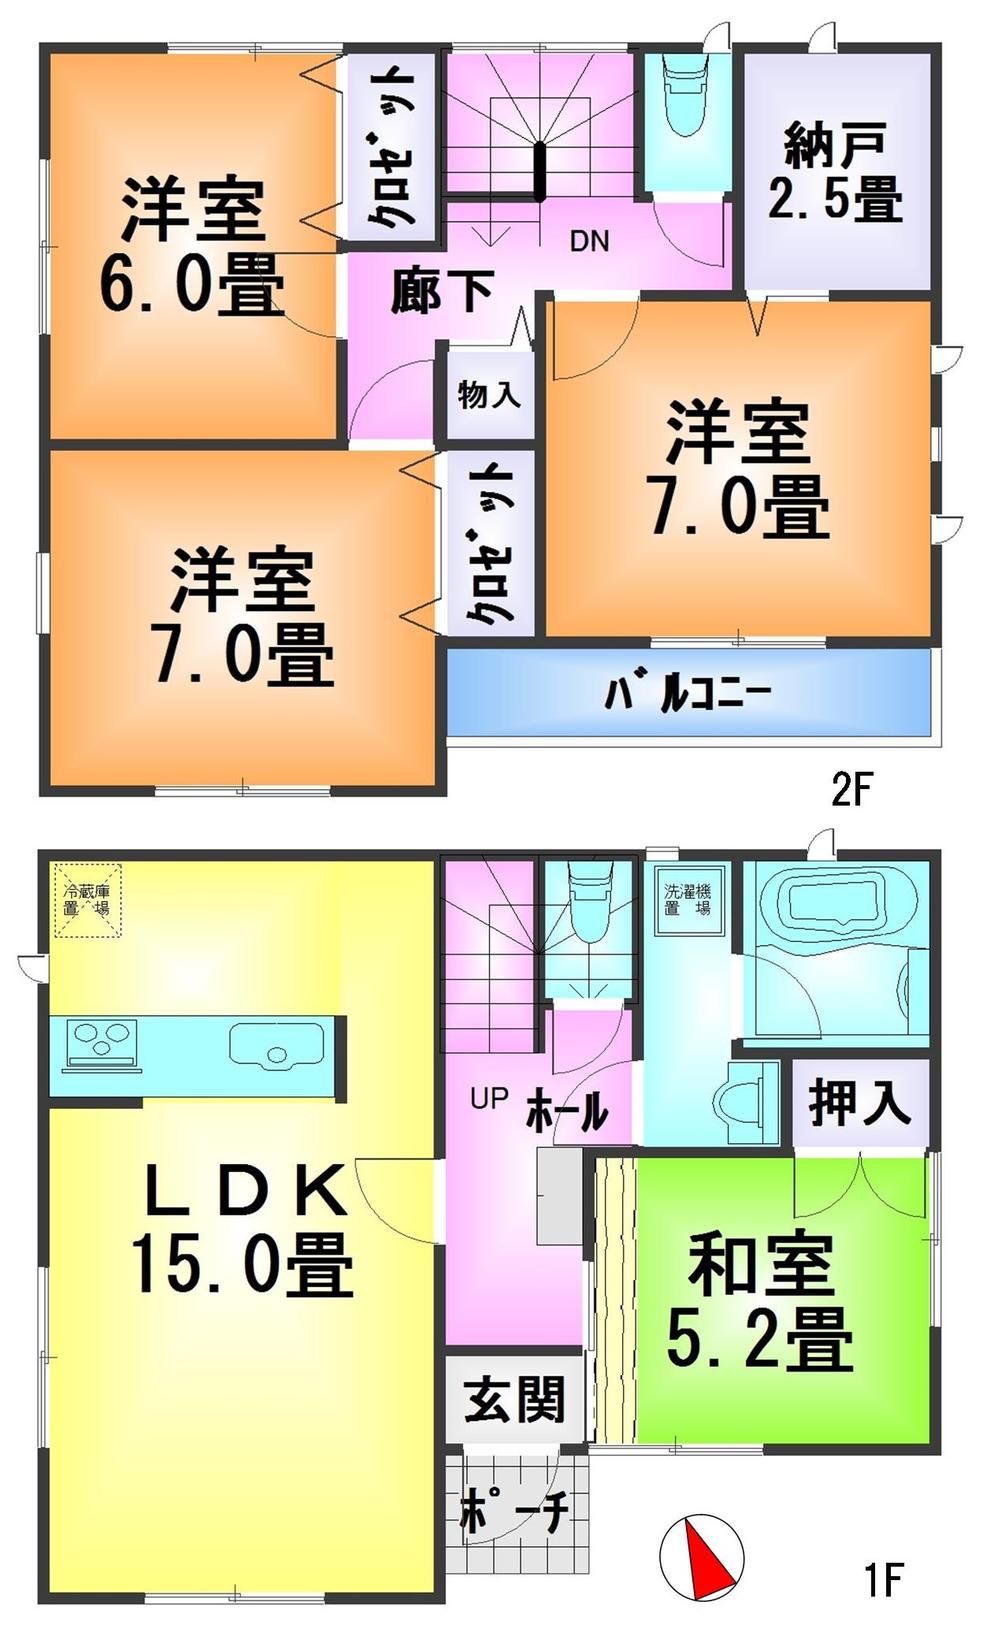 Floor plan. 22,800,000 yen, 4LDK + S (storeroom), Land area 145.22 sq m , Building area 96.79 sq m